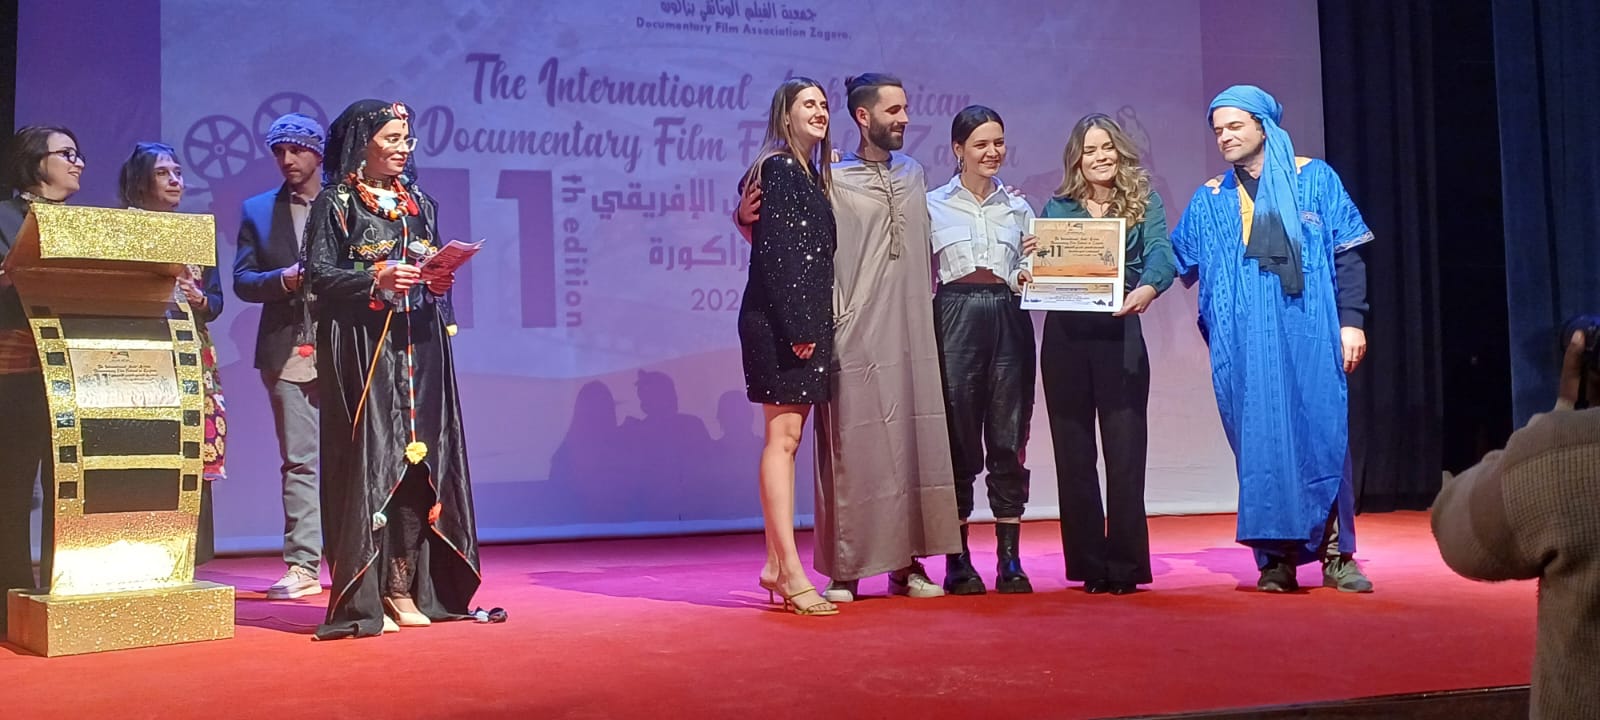 تتويج إيطاليا بالجائزة الكبرى للمهرجان الدولي العربي الإفريقي الوثائقي بزاكروة